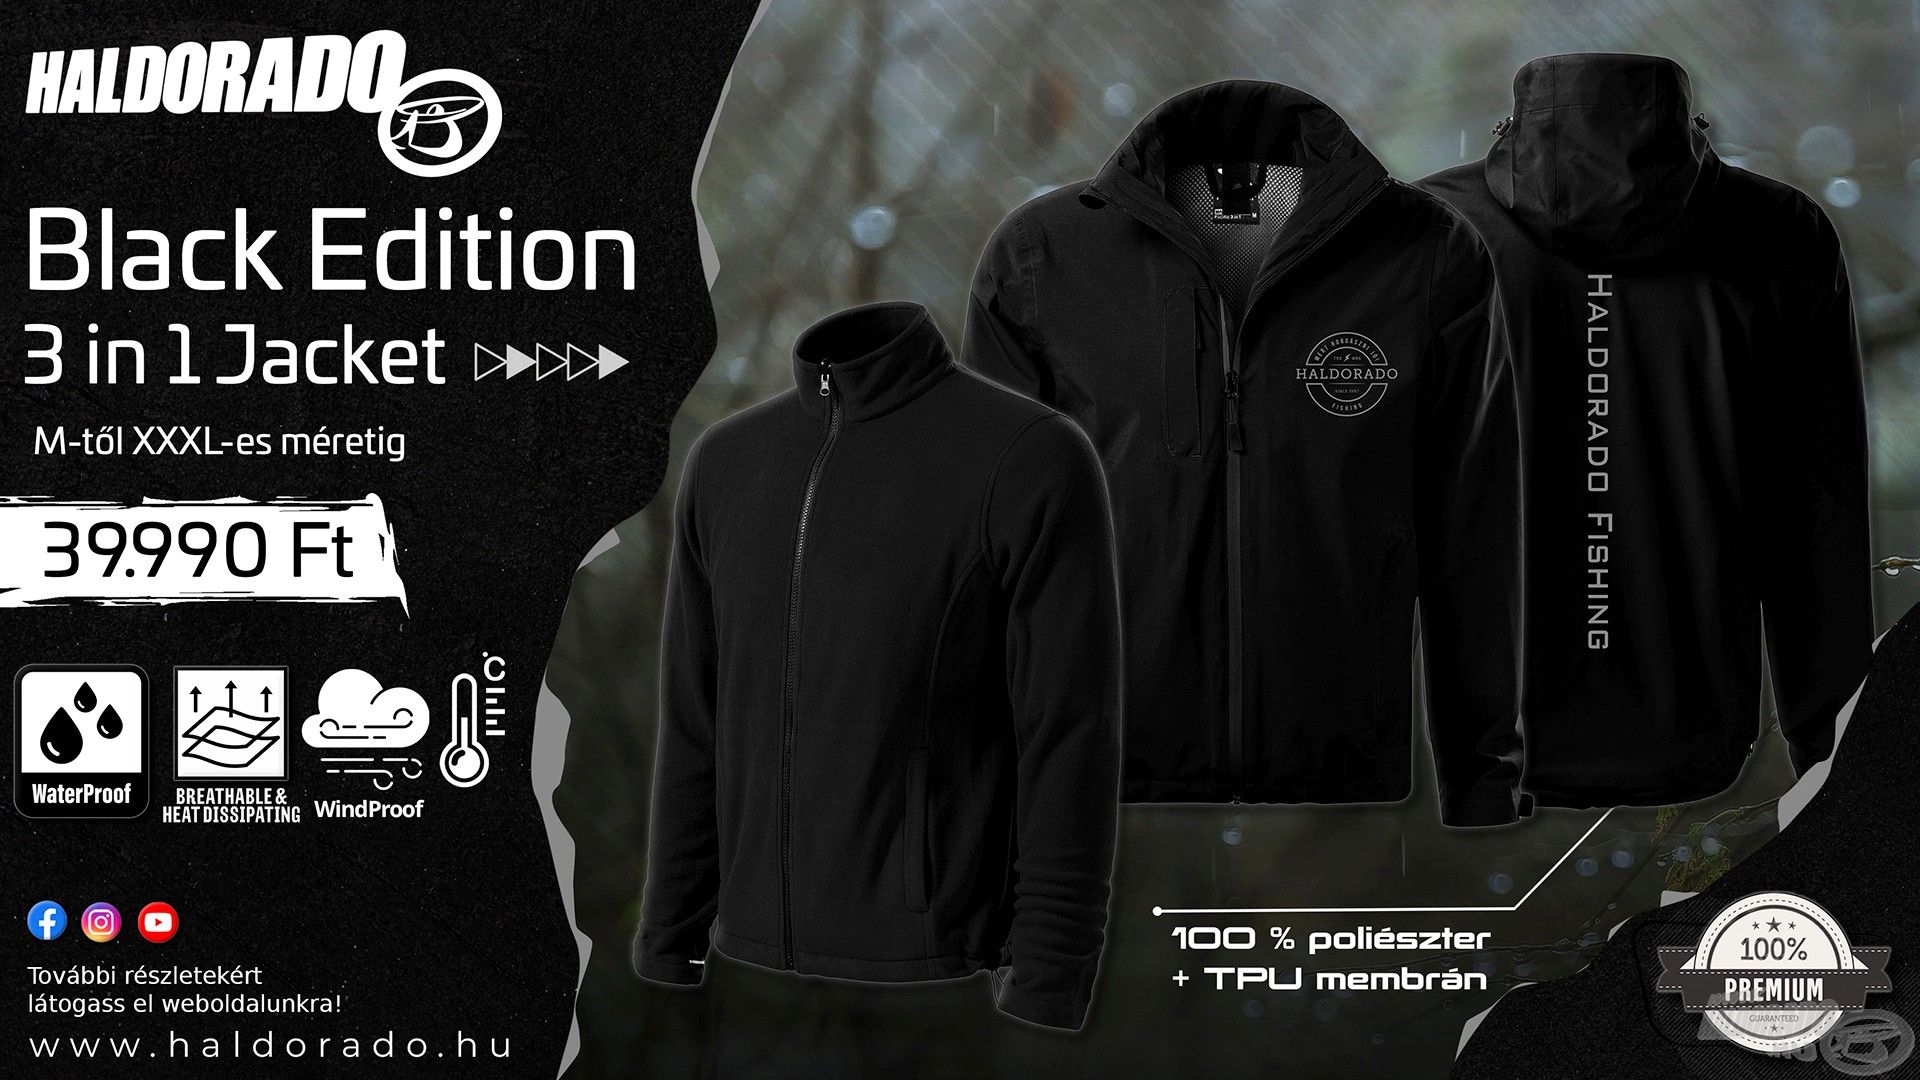 A Haldorádó Black Edition 3 in 1 Jacket a legújabb, átmeneti időszakra szánt ruházatunk. Igazán mutatós, egyedi és stílusos ruhadarab, mely jó választás egyaránt horgászat vagy utcai viselet során